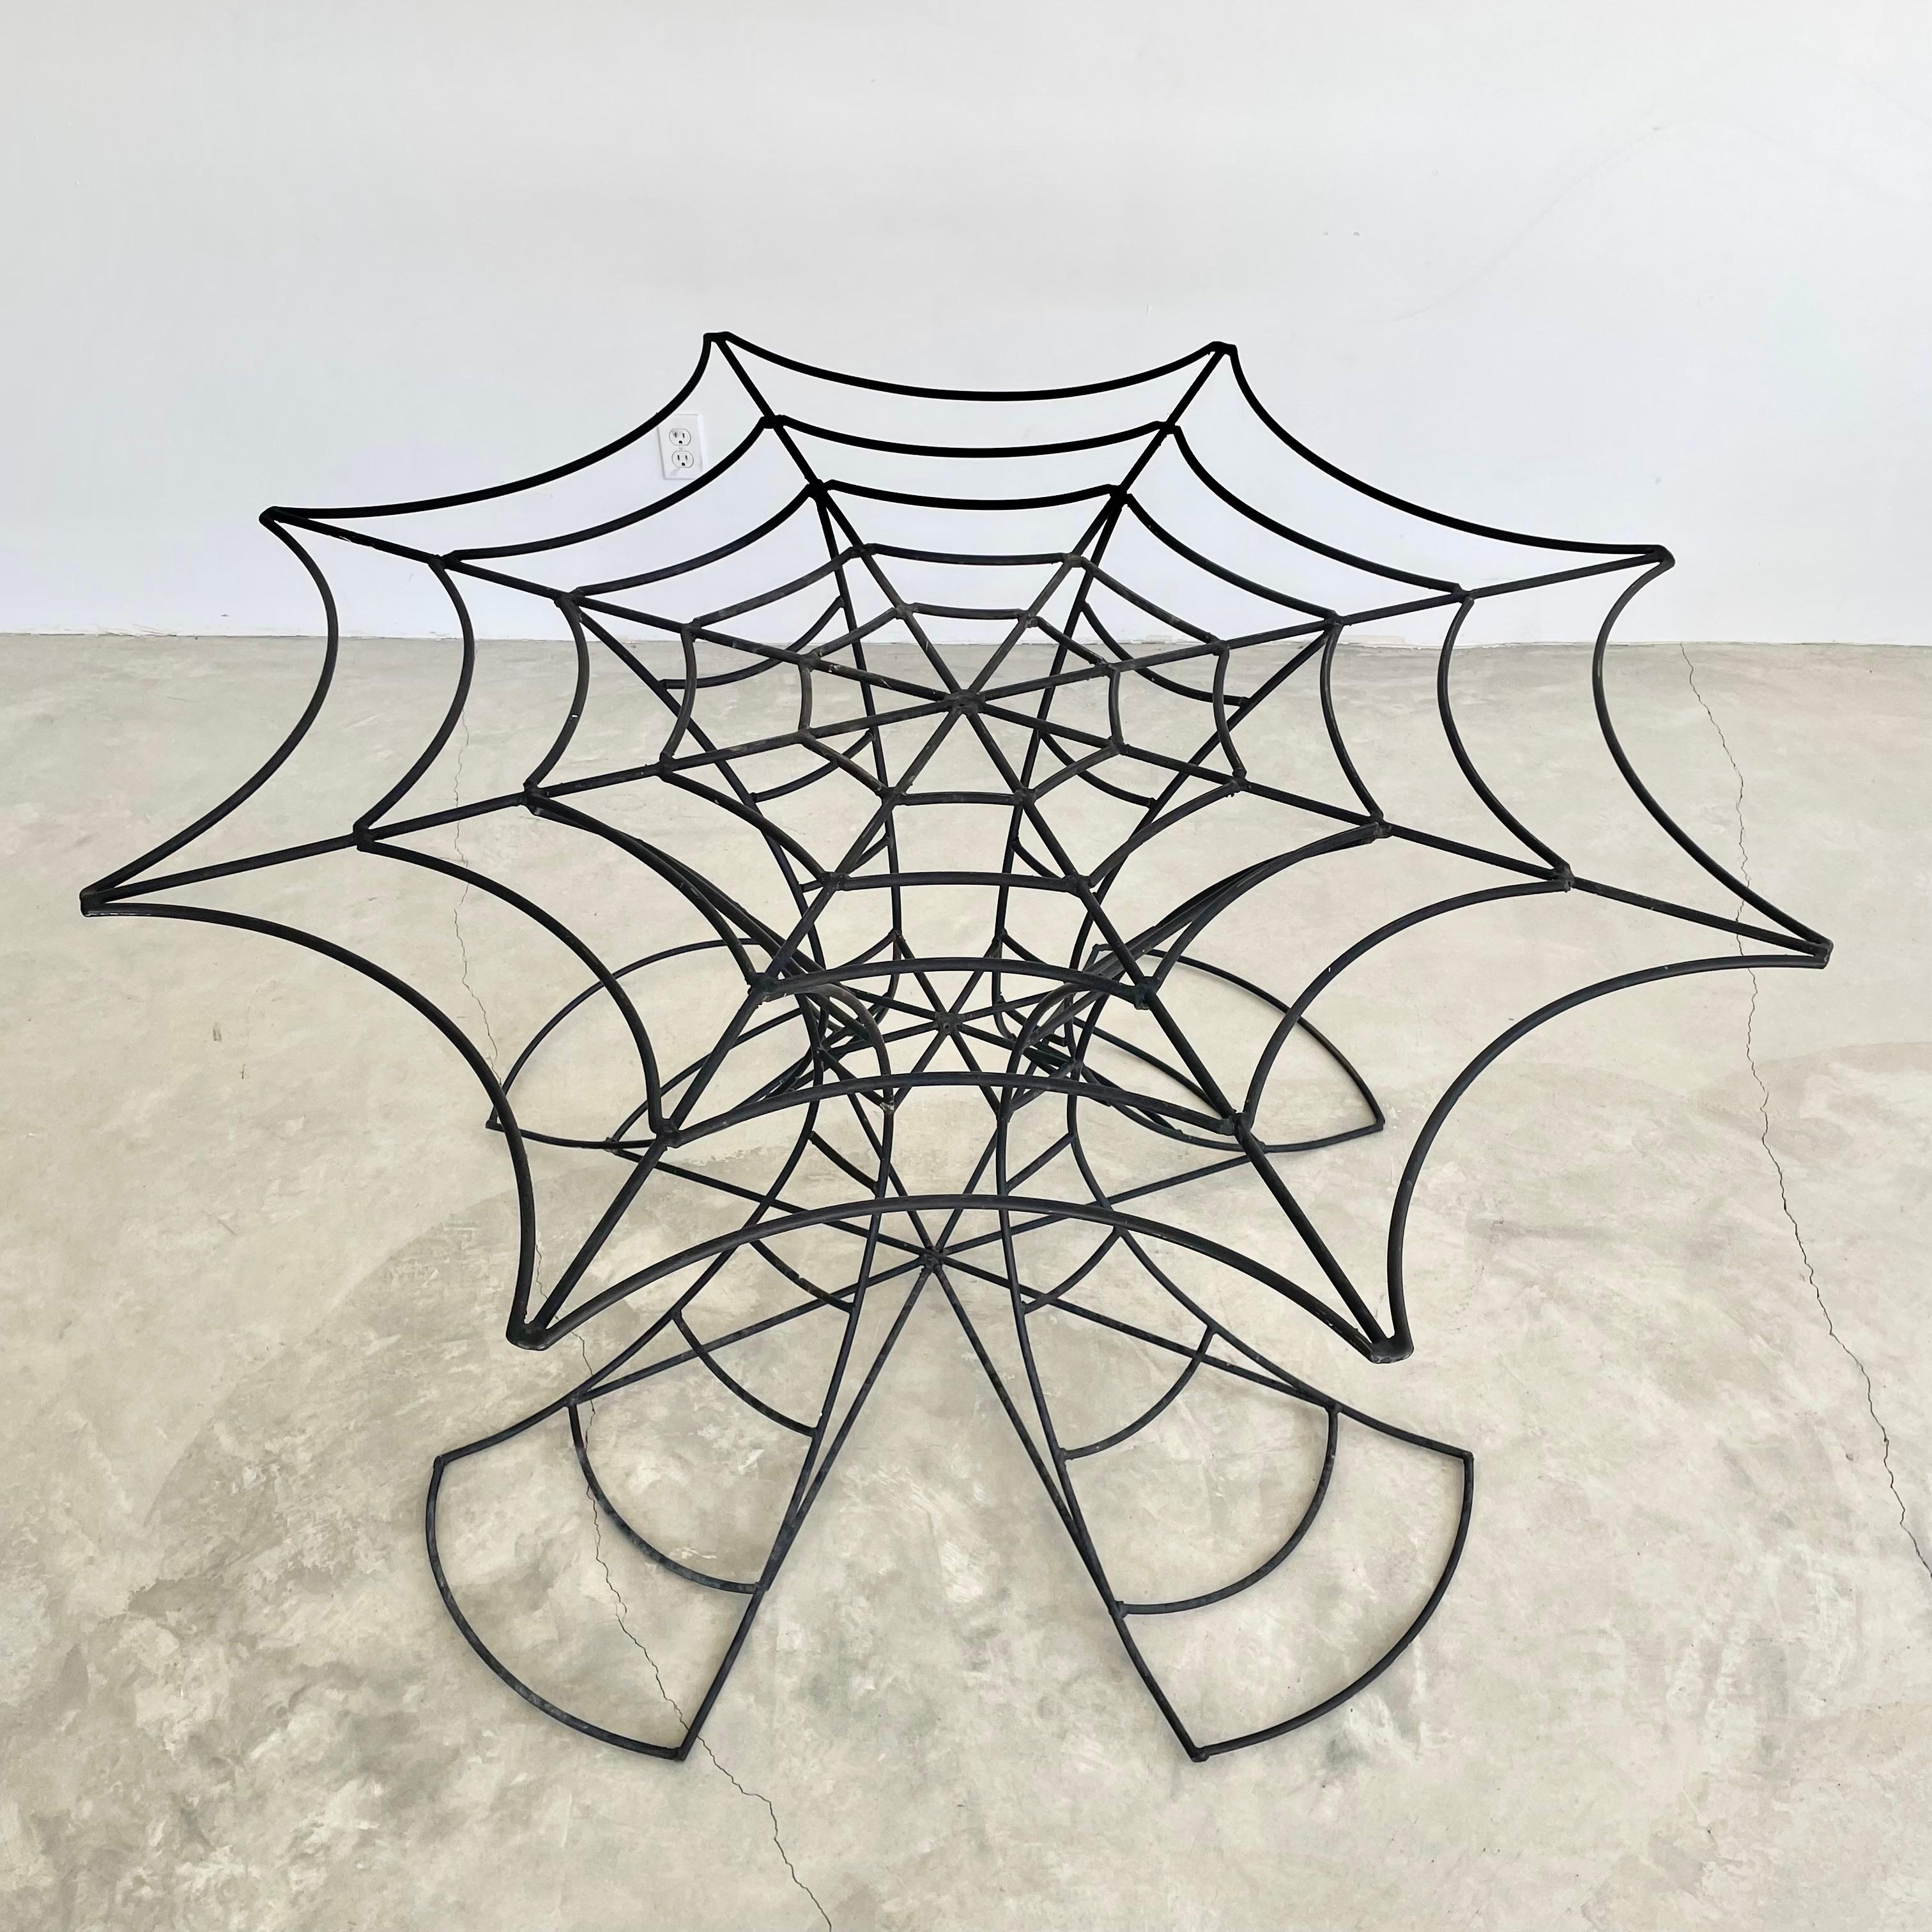 Unglaublich einzigartiger, geschweißter Metalltisch in Form eines massiven Spinnennetzes mit viel Liebe zum Detail, bei dem die Biegungen der einzelnen Metallstäbe perfekt um den gesamten Tisch herum angeordnet sind. Das Gestell besteht aus vier